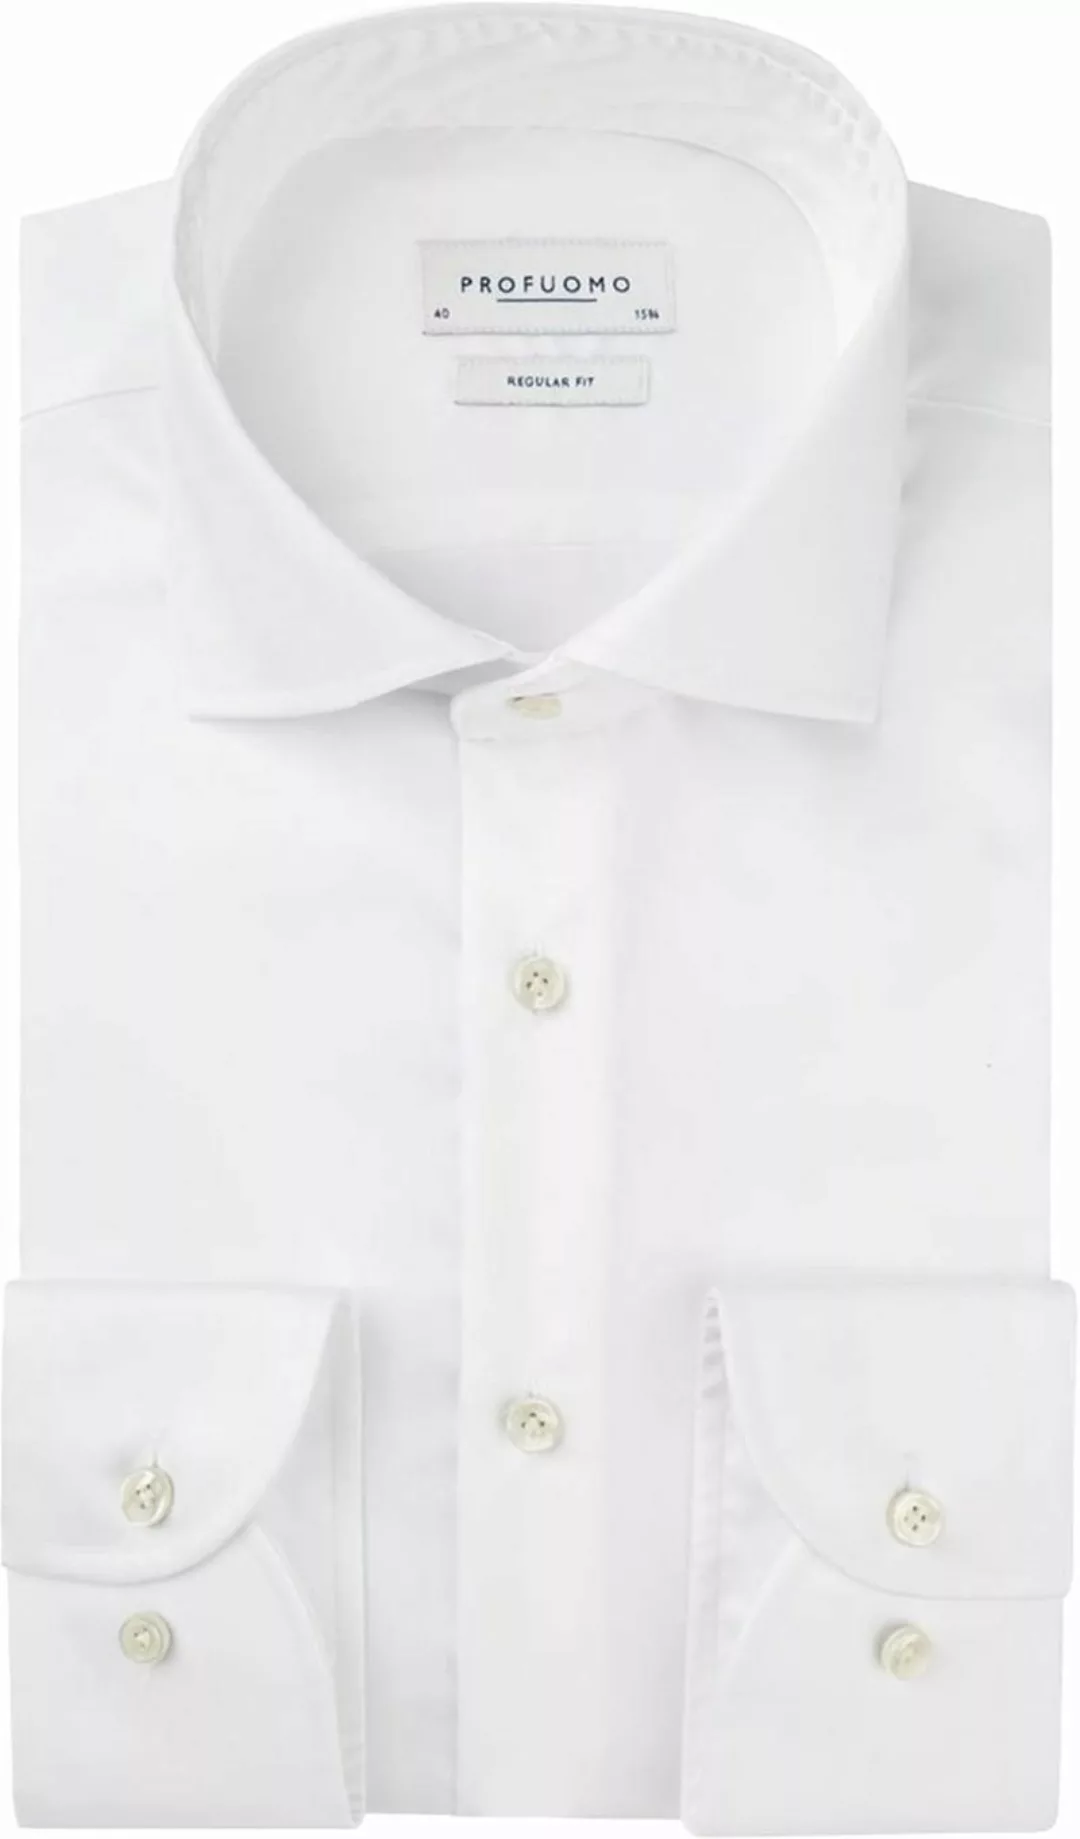 Profuomo Originale Hemd RF Weiß - Größe 39 günstig online kaufen